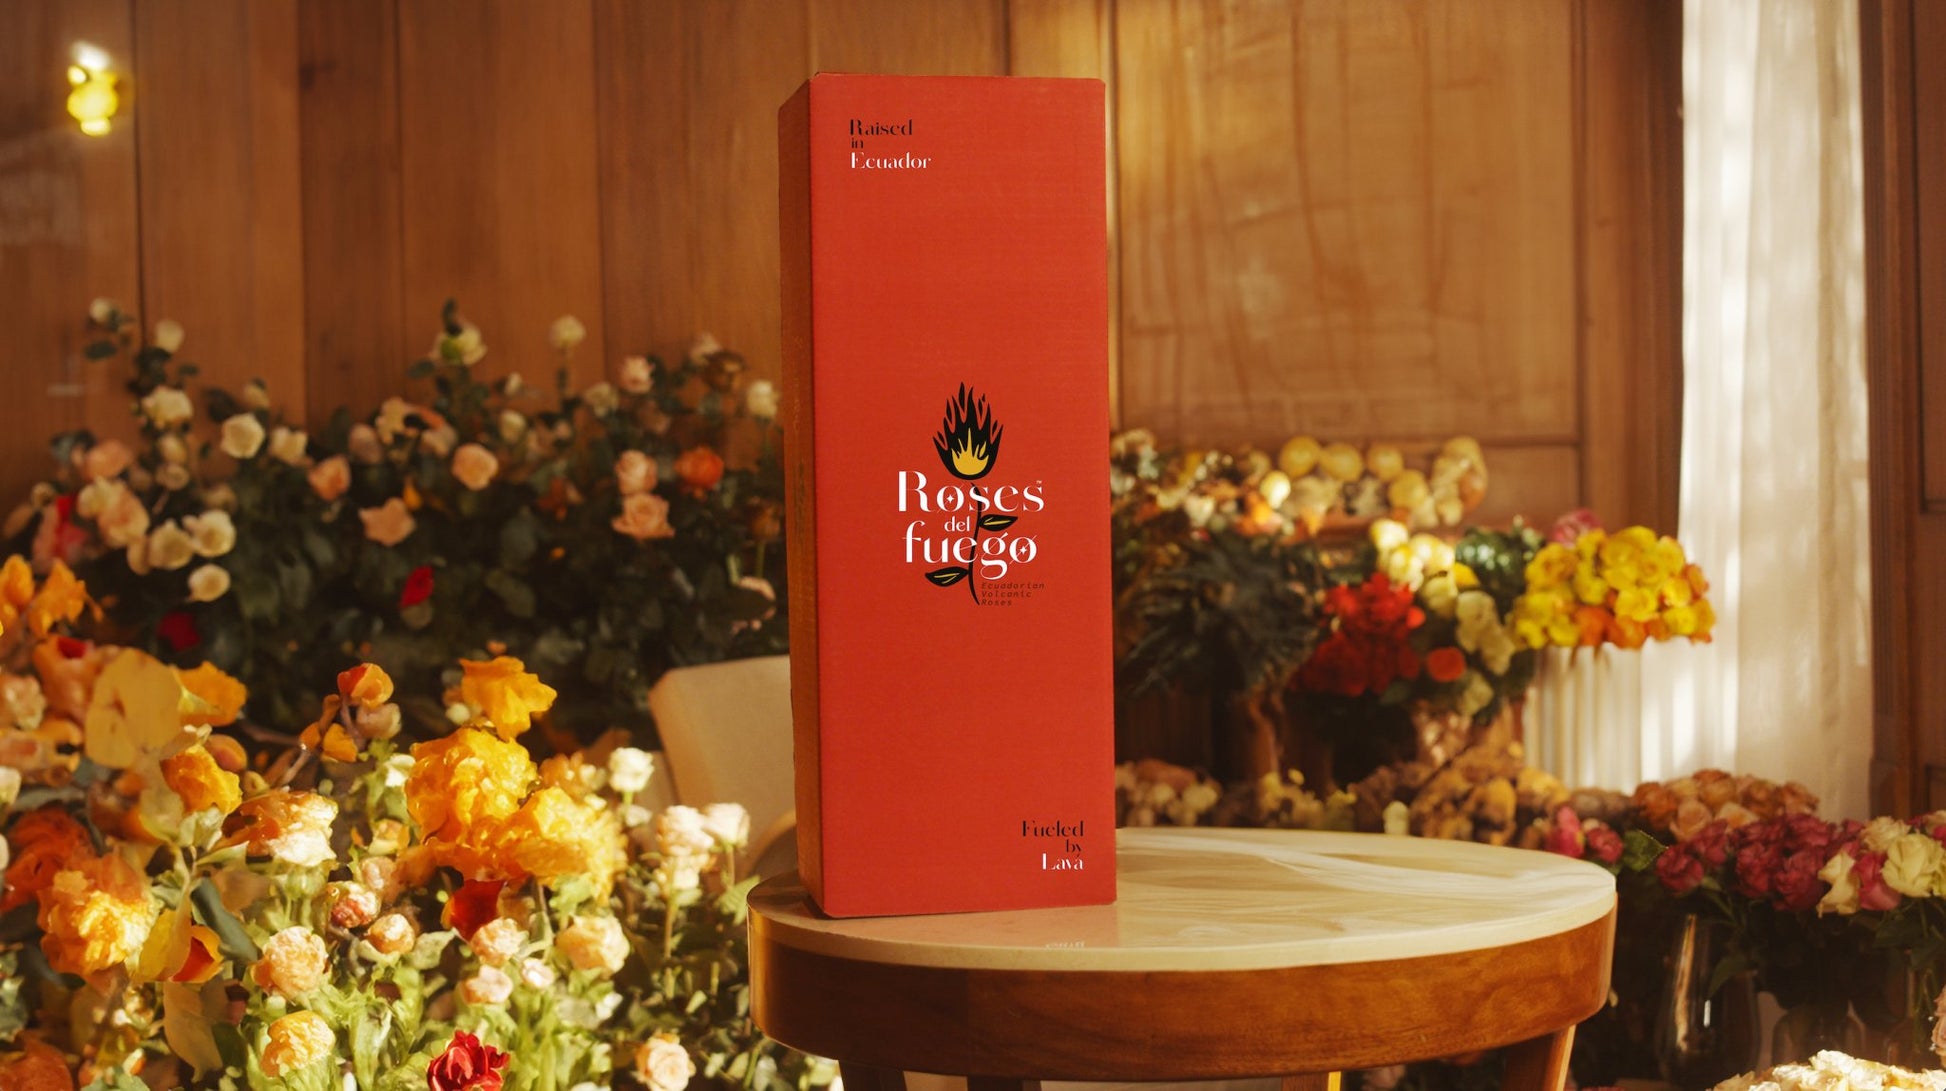 Hot Combination 100 #3 - Roses del fuego